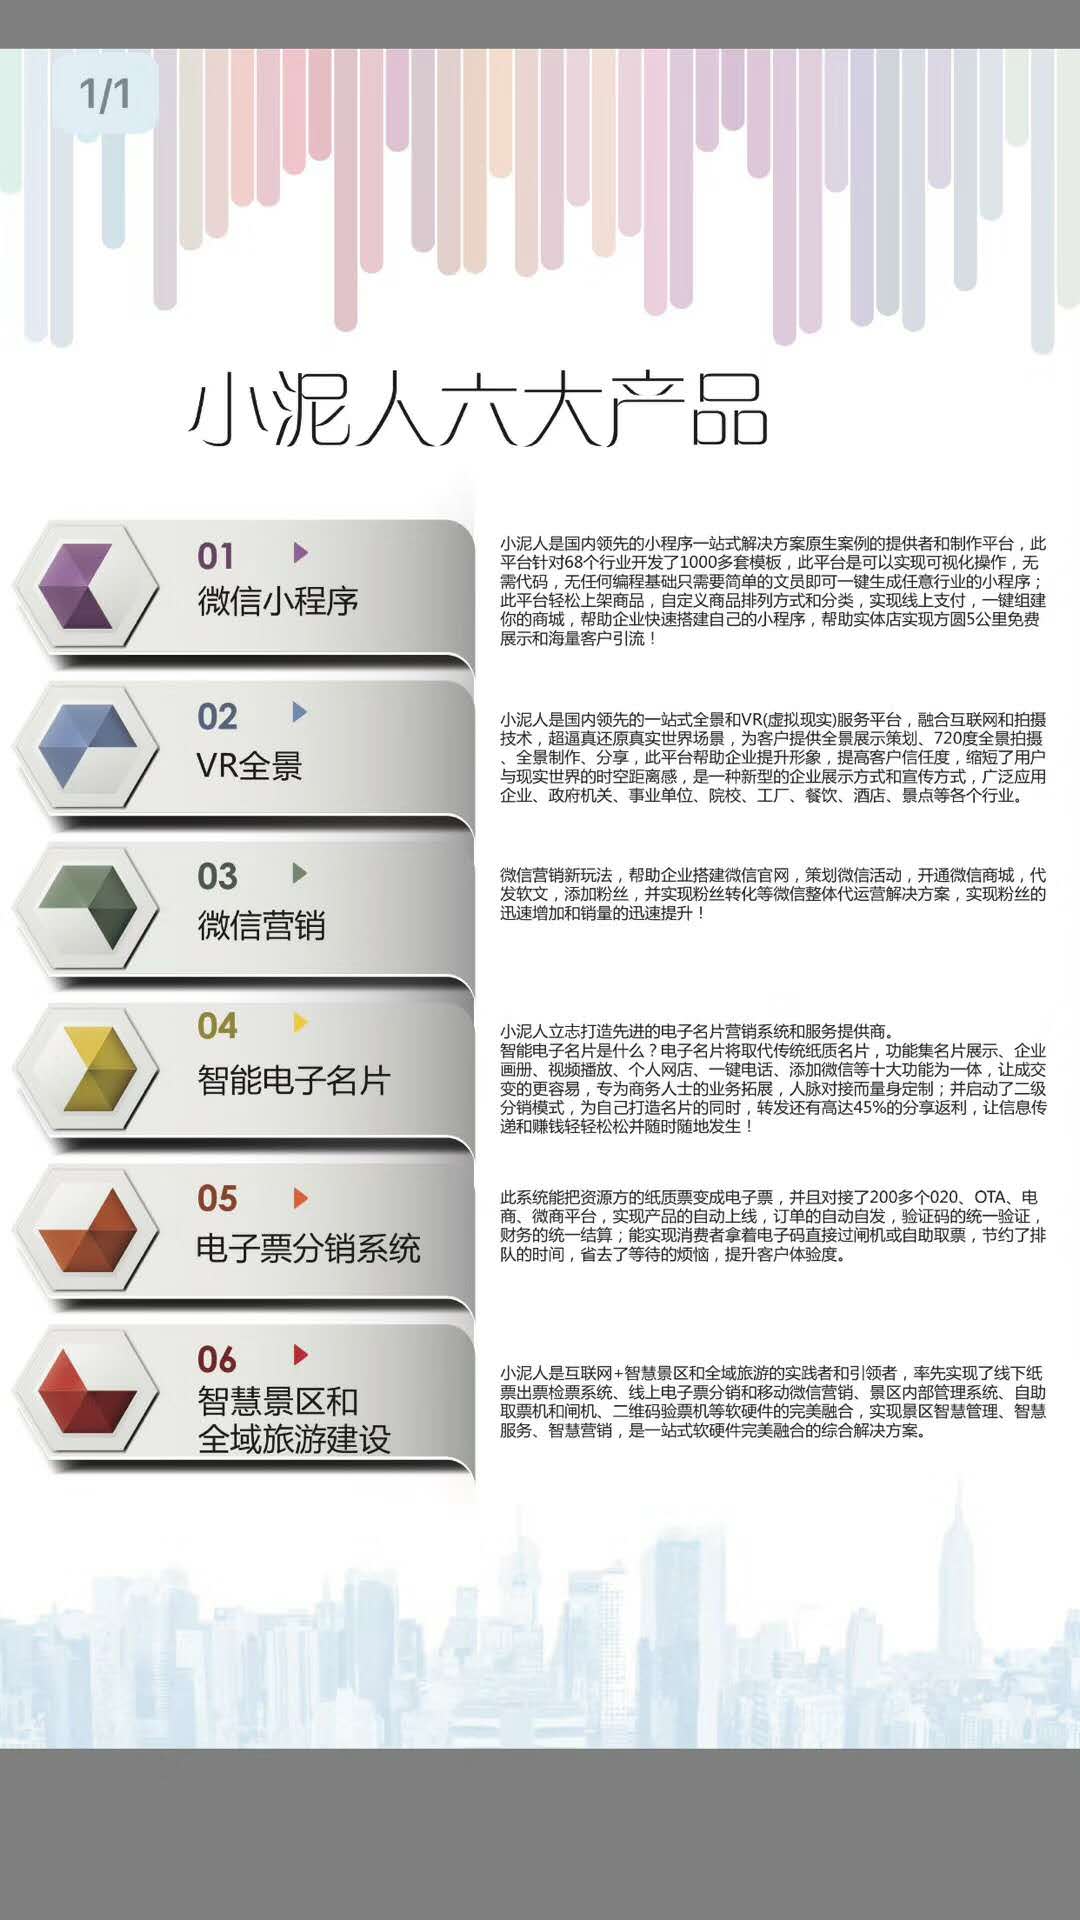 北京小泥人微信小程序*代理招商，VR全景，电子票分销系统，智慧乐园管理系统